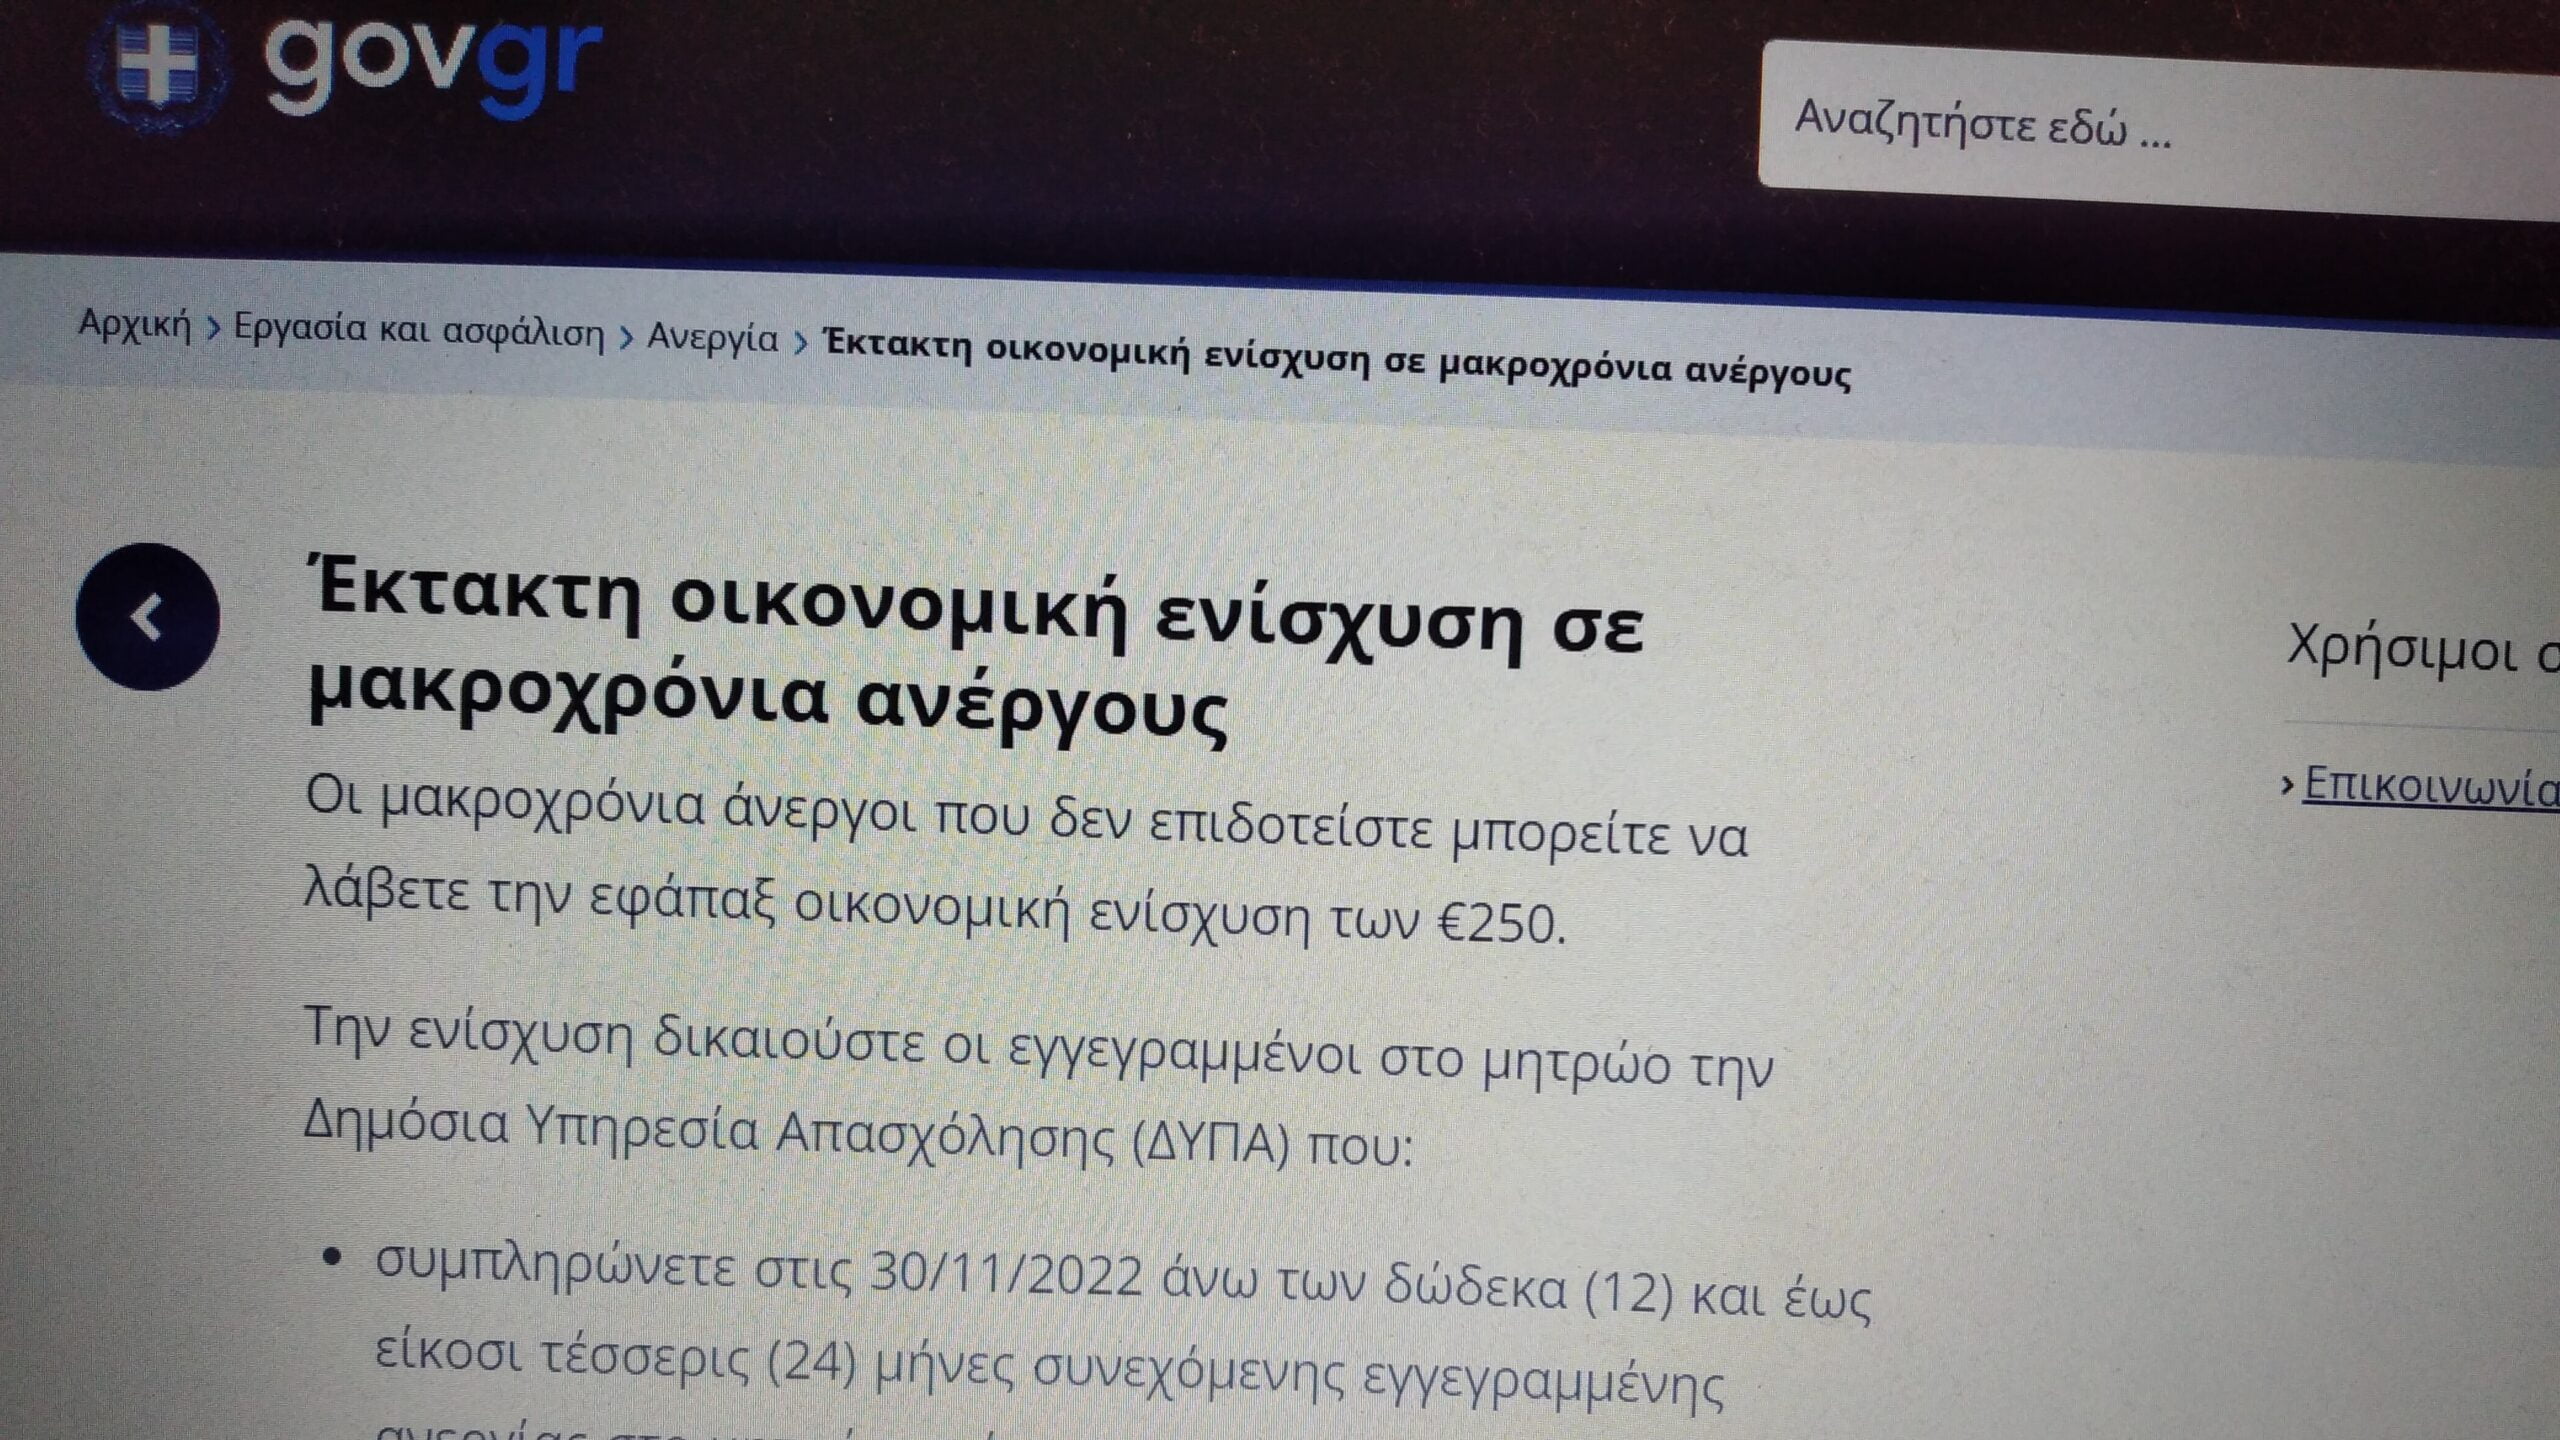 Έτσι θα πάρετε τα 250€ - Επιταγή ακρίβειας (gov.gr)